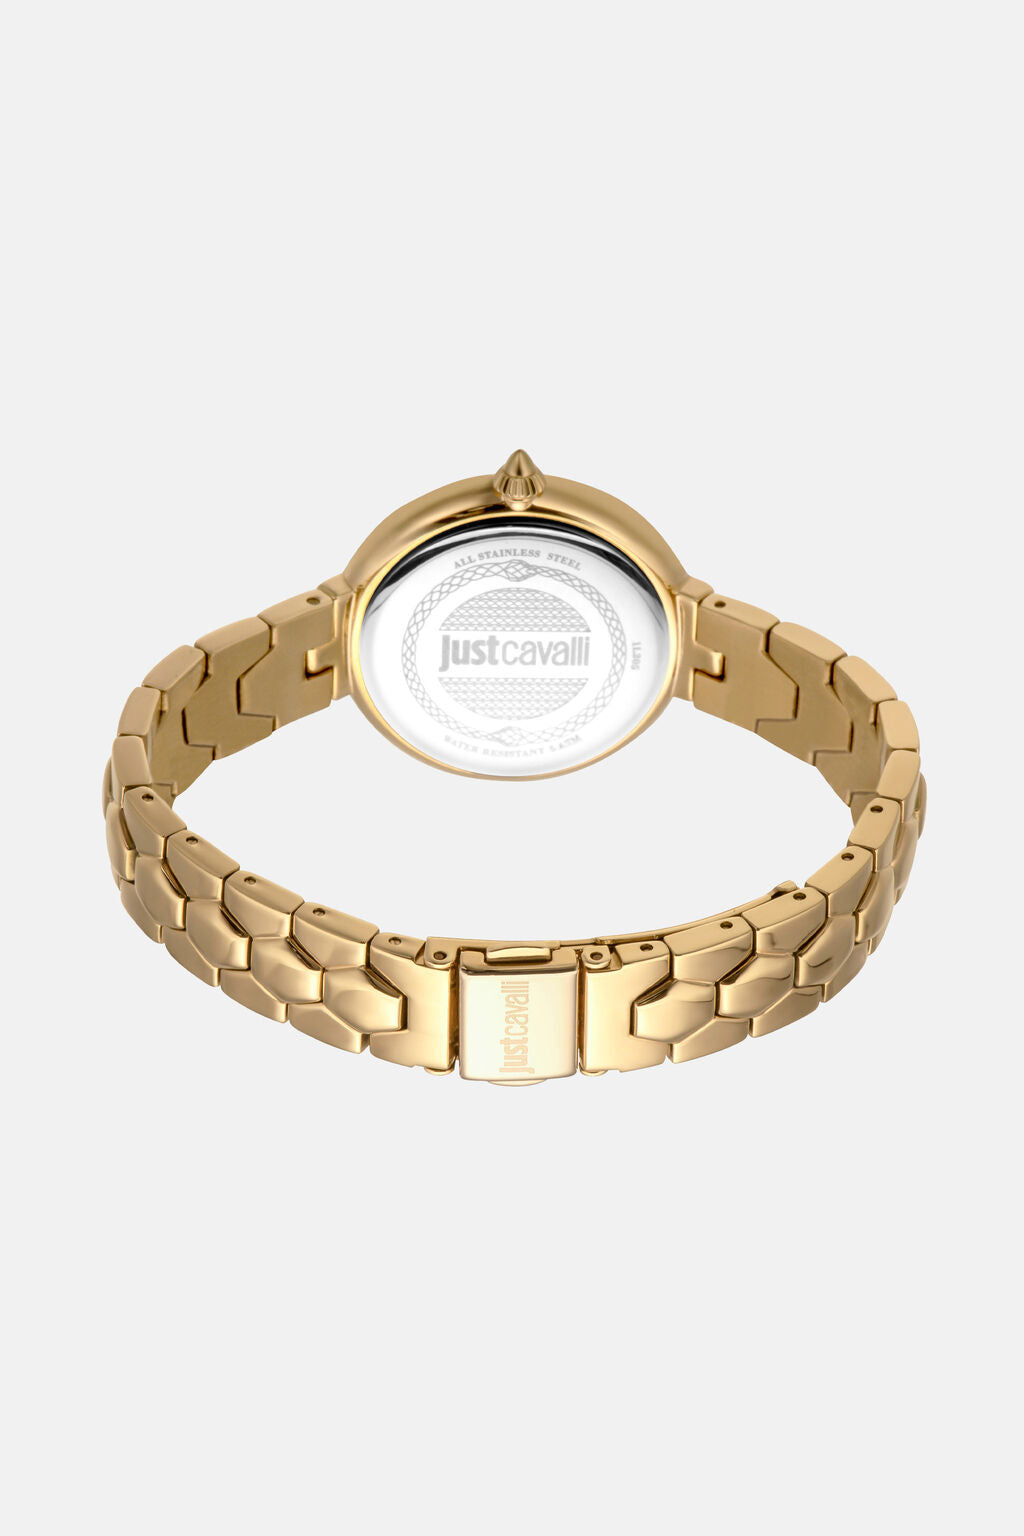 Just Cavalli Glam Chic - Horloge + Armband